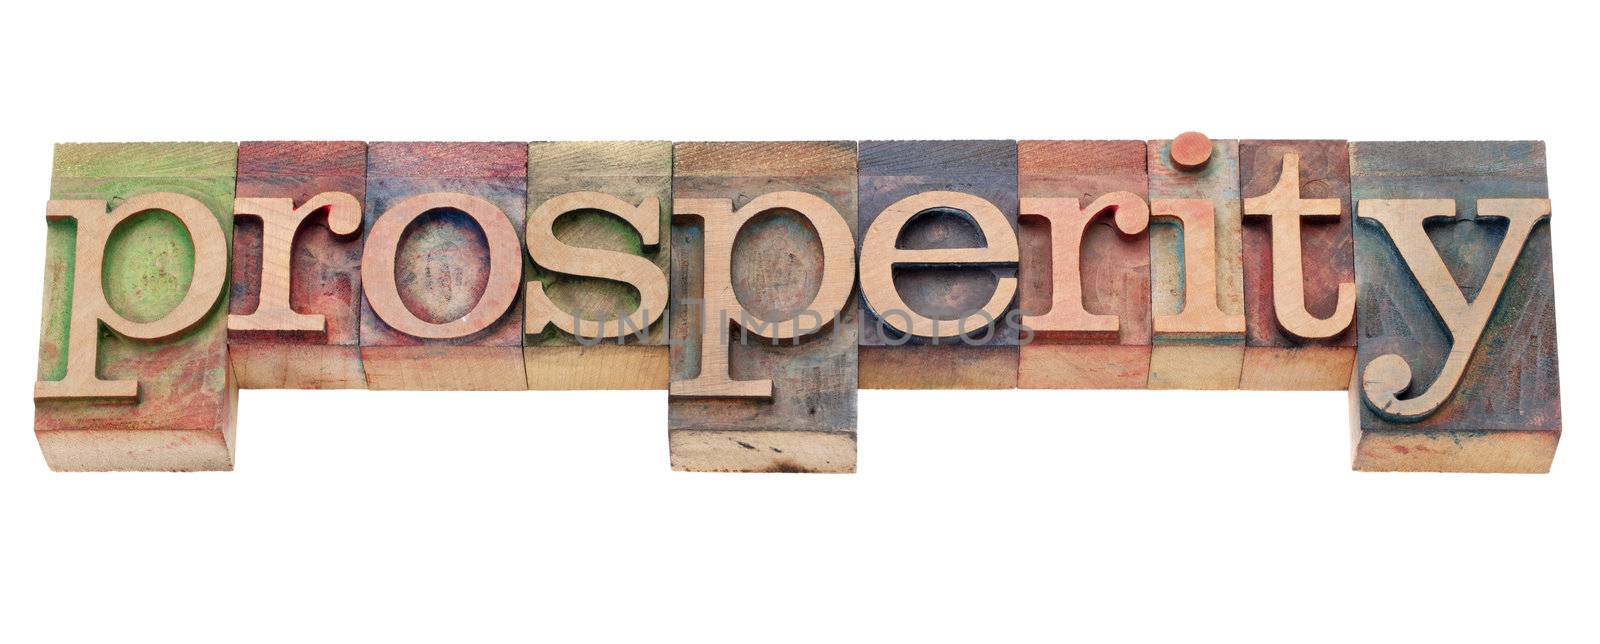 prosperity word in letterpress type by PixelsAway